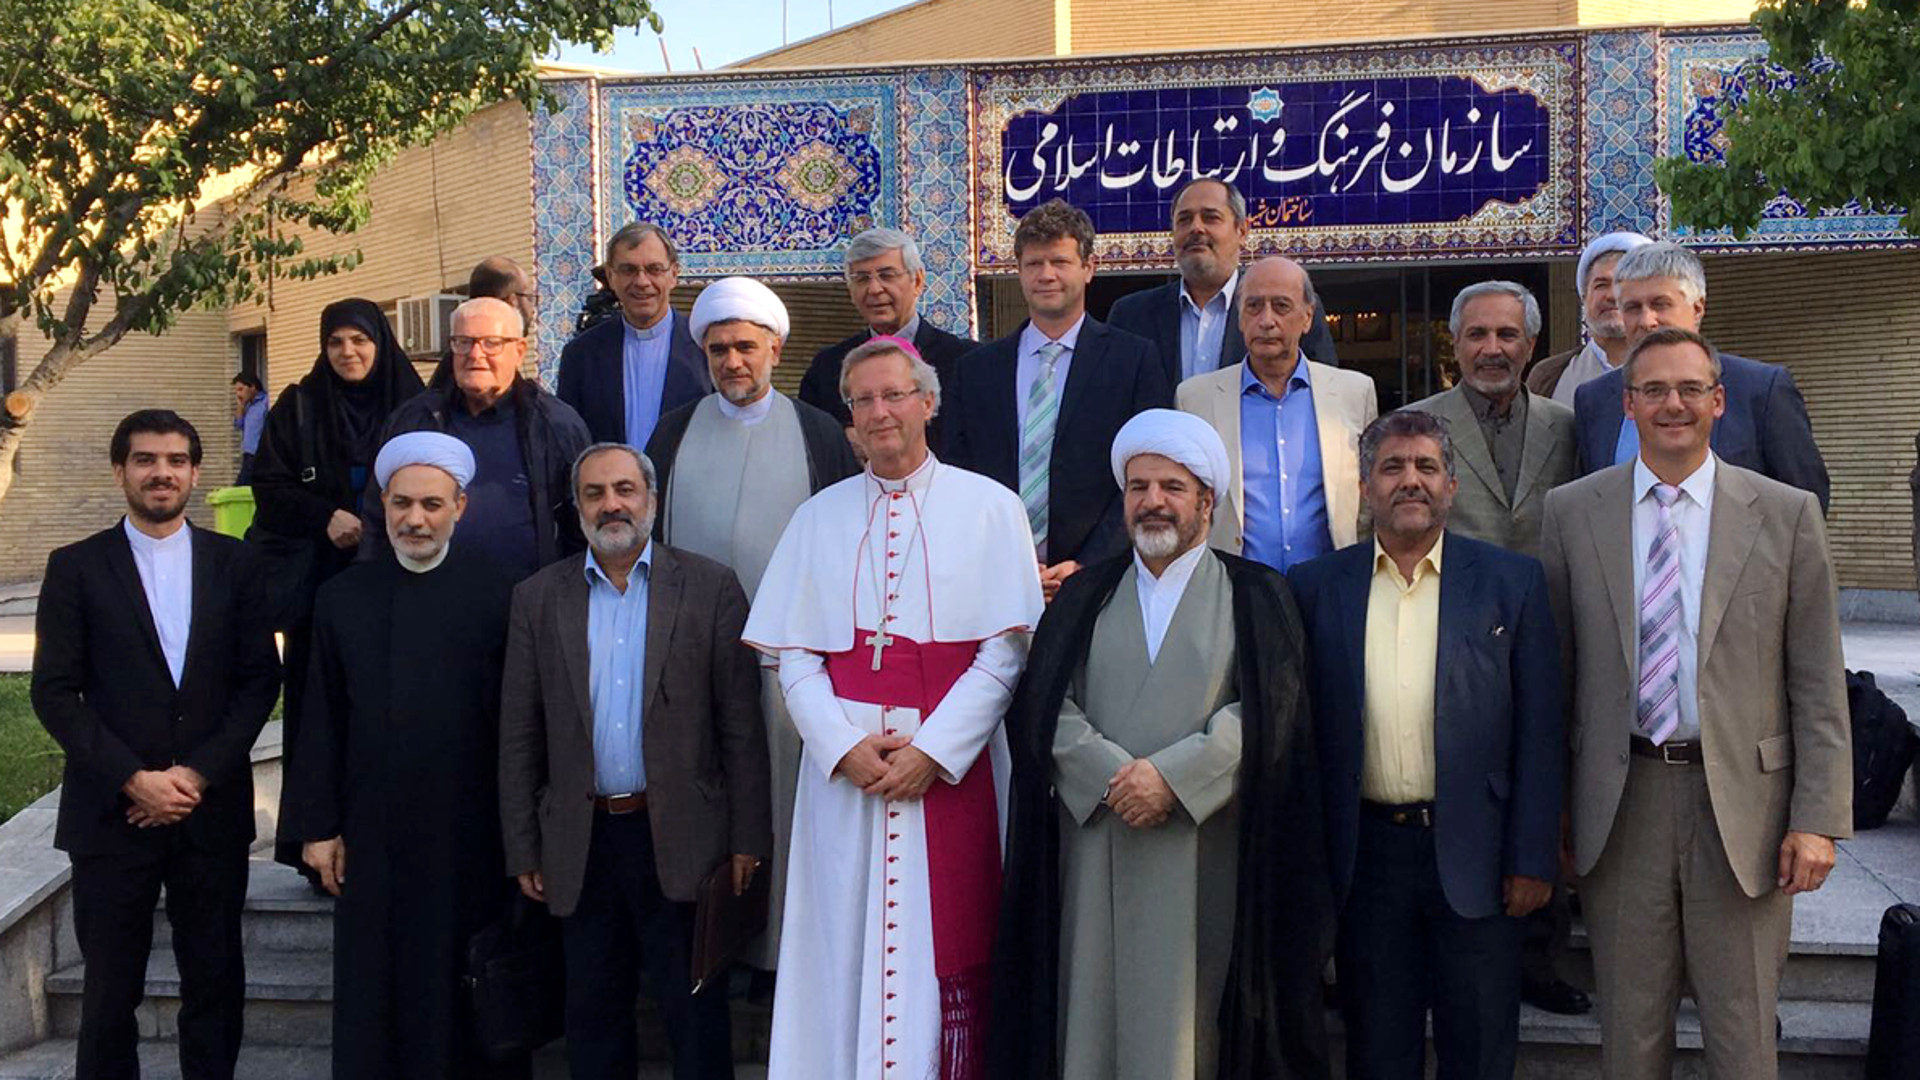 Die Kommission der Schweizer Bischofskonferenz mit den Gastgebern in Iran.